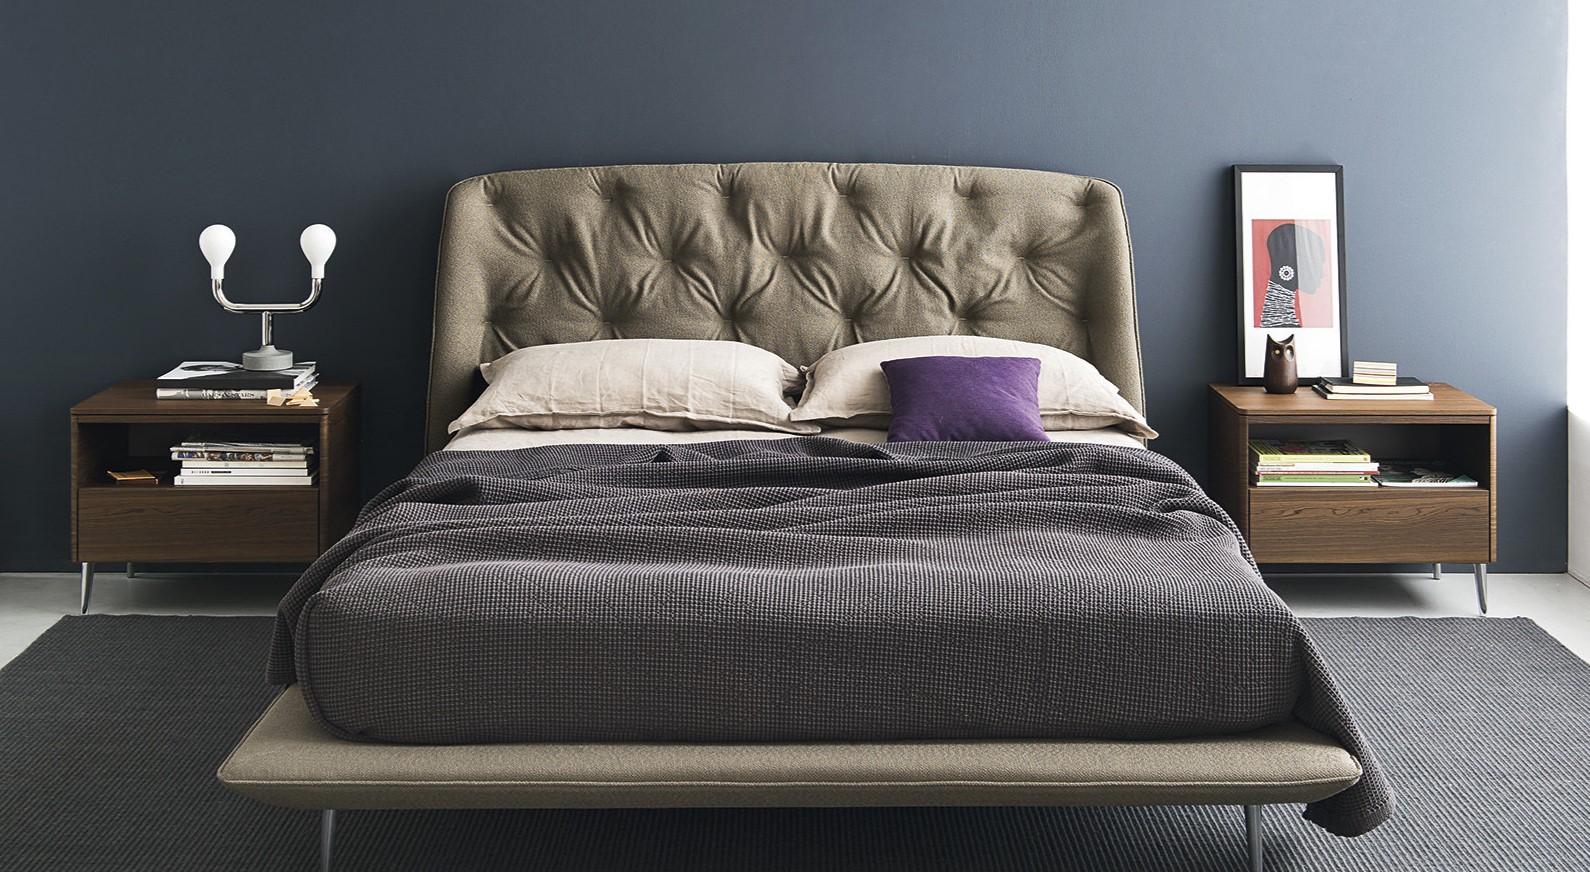 Кровать с текстильным изголовьем прекрасно подходит под интерьер спальни